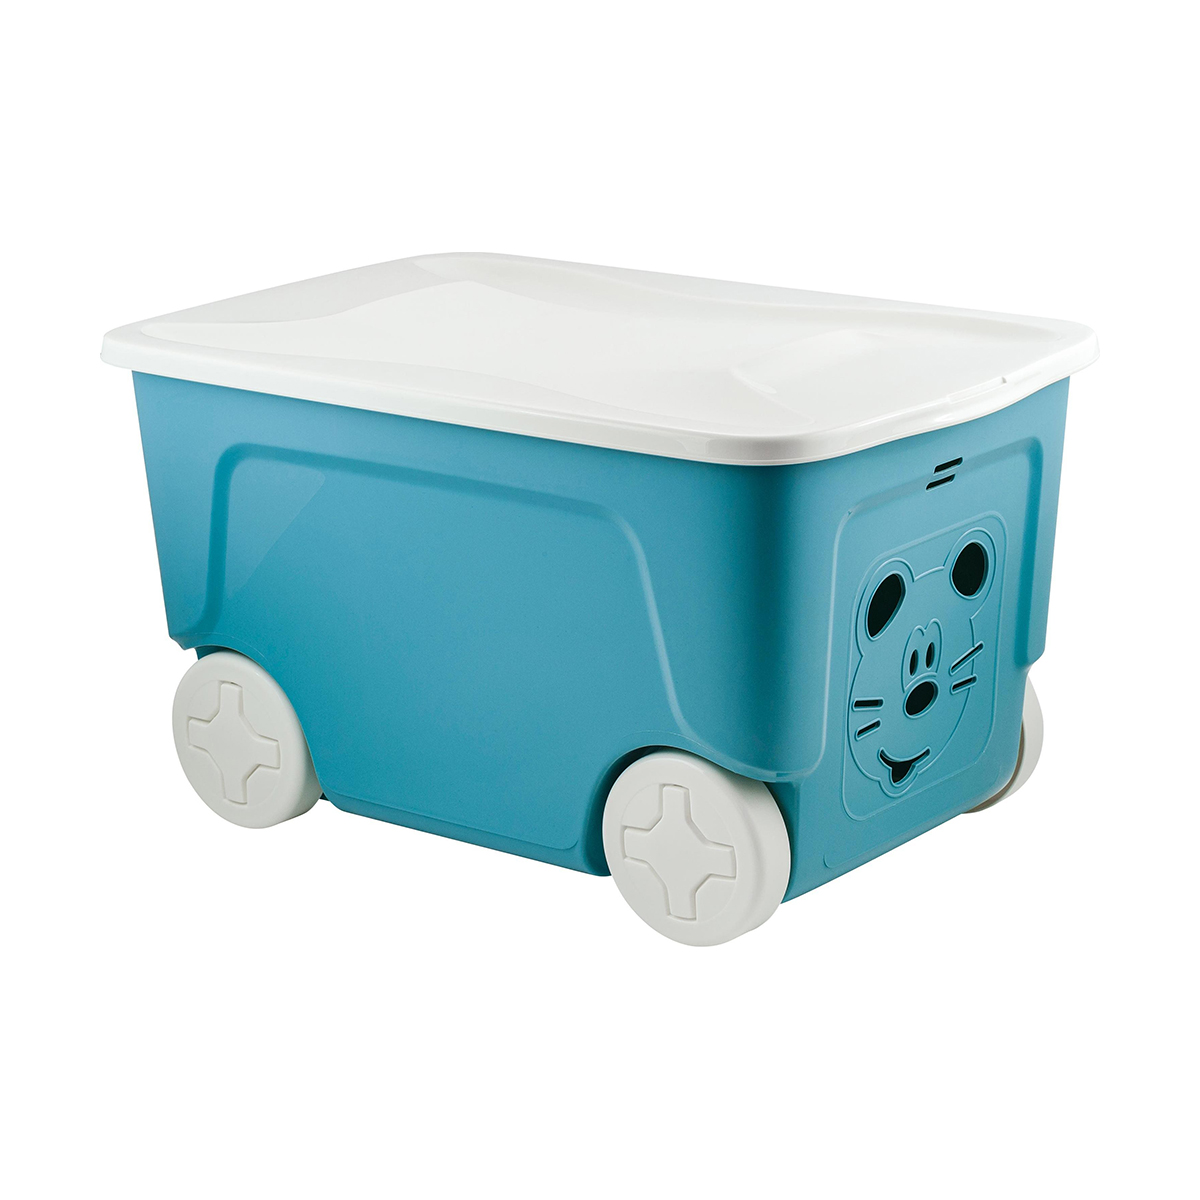 Ящик для игрушек на колесах Lalababy Play with Me, 59 x 38,3 x 33 см, 50 л, синий колокол вешалка напольная для одежды с корзиной ladо́m на колесах 55×42×160 см